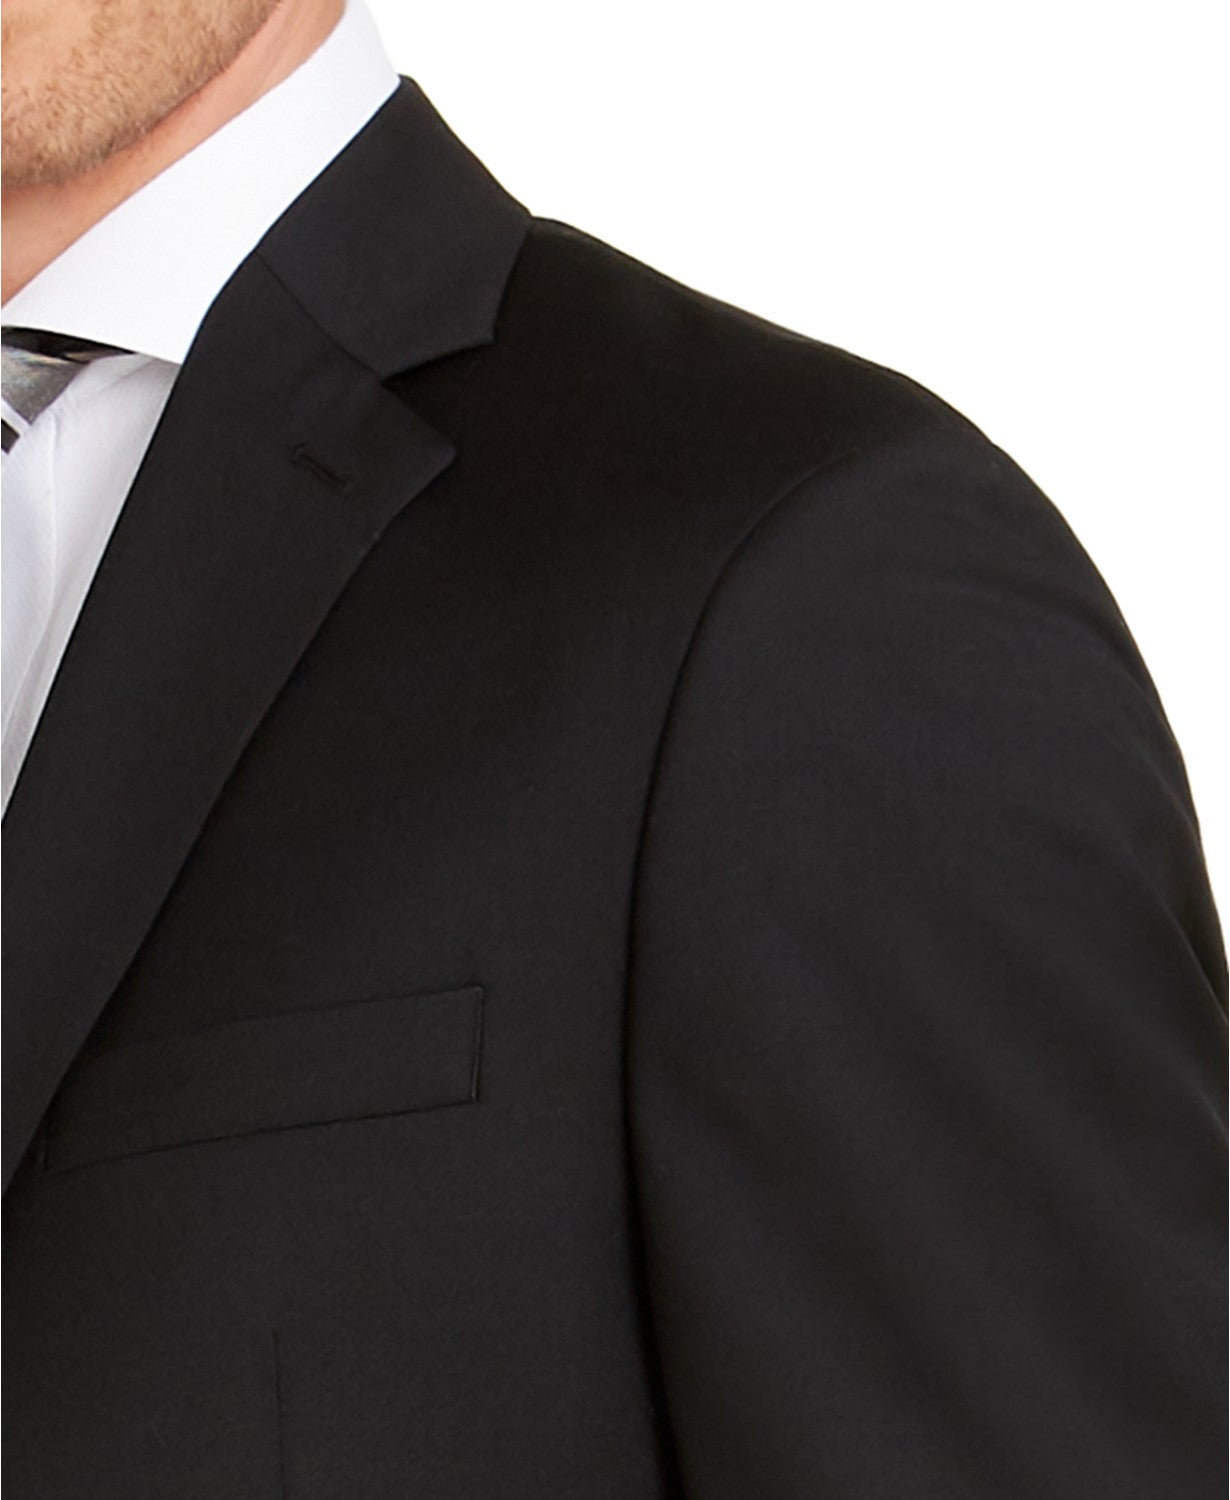 Michael Kors Men's Black Solid Suit Jacket 44L Classic-Fit Airsoft Stretch